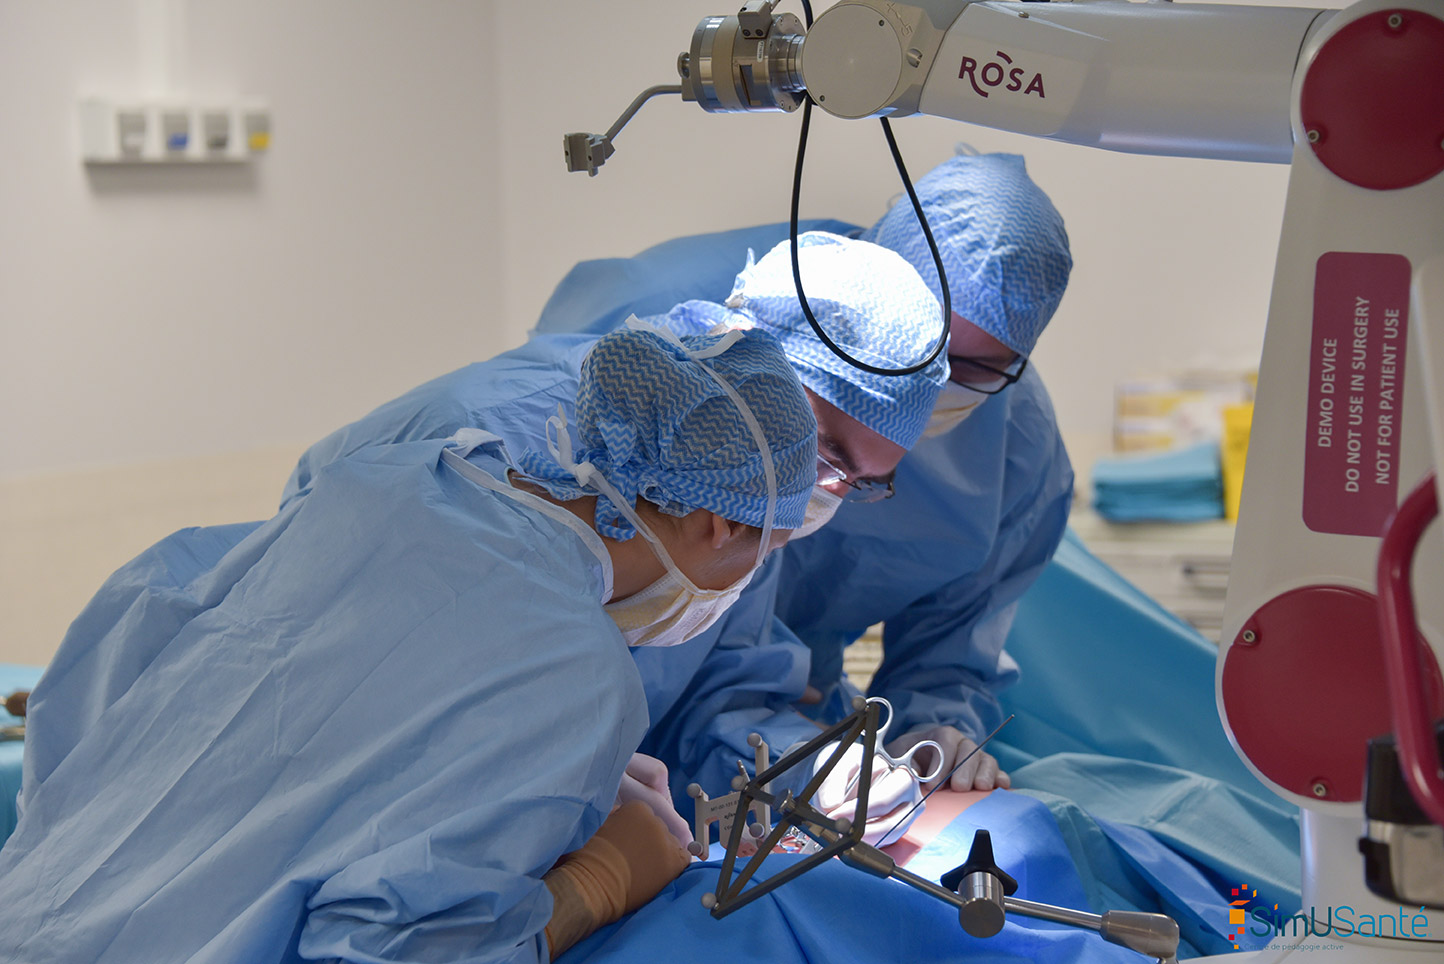 Réaliser une chirurgie mini-invasive dorso-lombaire sous assistance robotisée.